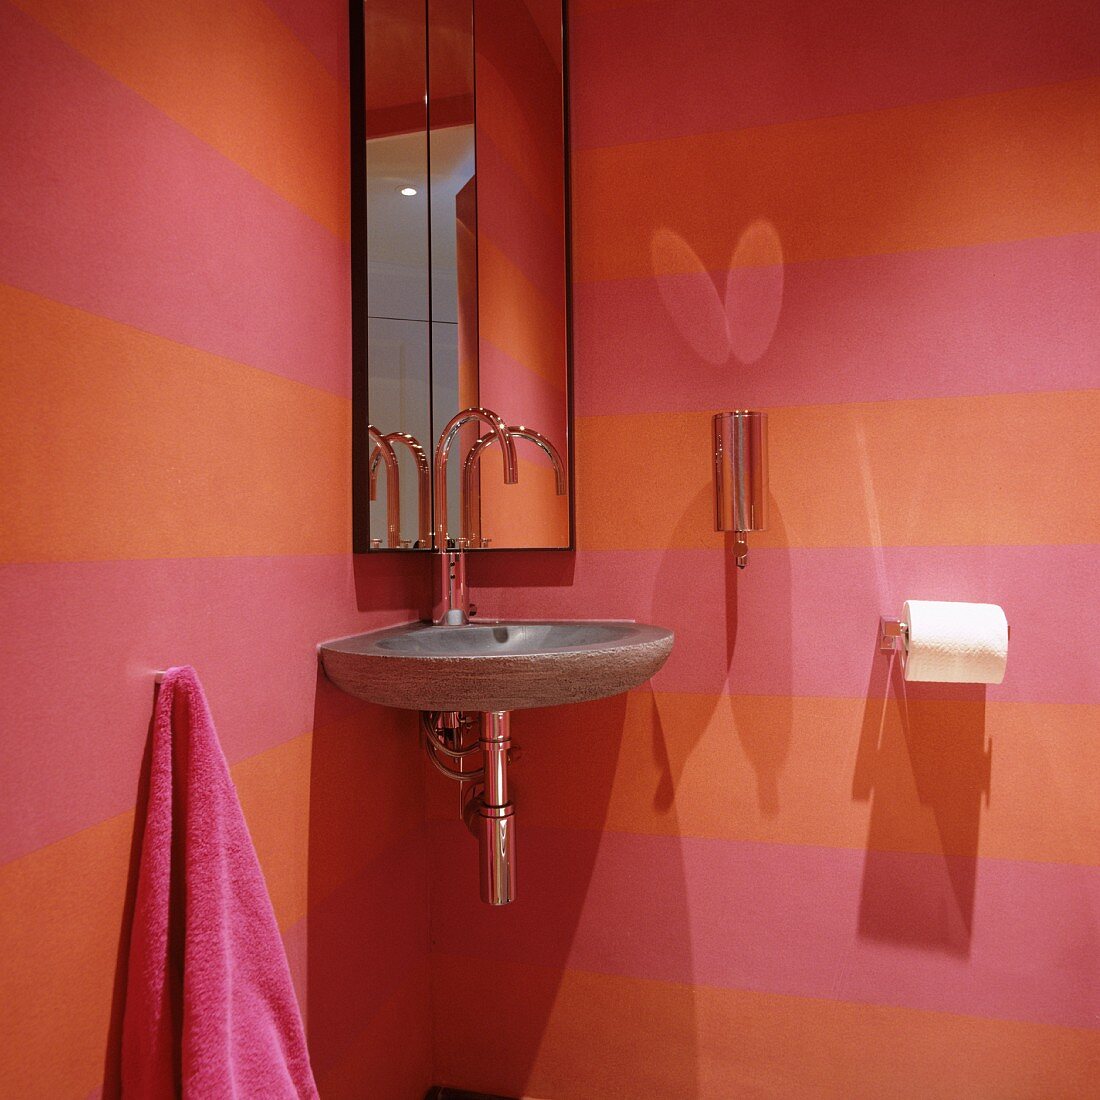 Eckwaschbecken aus Stein und Spiegelschrank in rosa-orange-farben gestreifter Gäste-Toilette